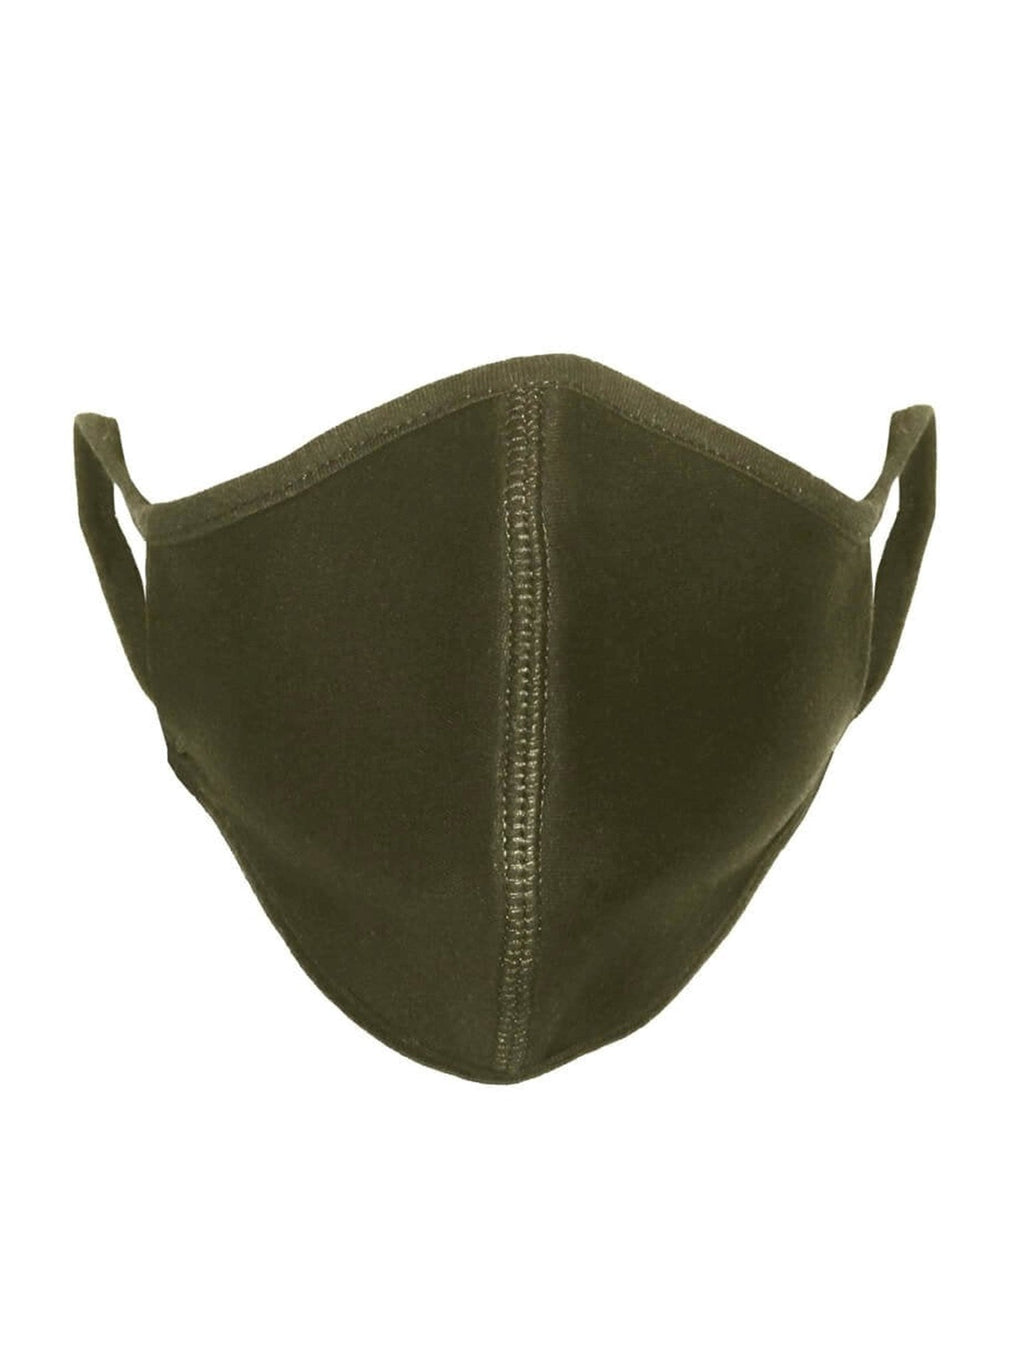 Maschera di stoffa - Olive Green (cotone biologico)